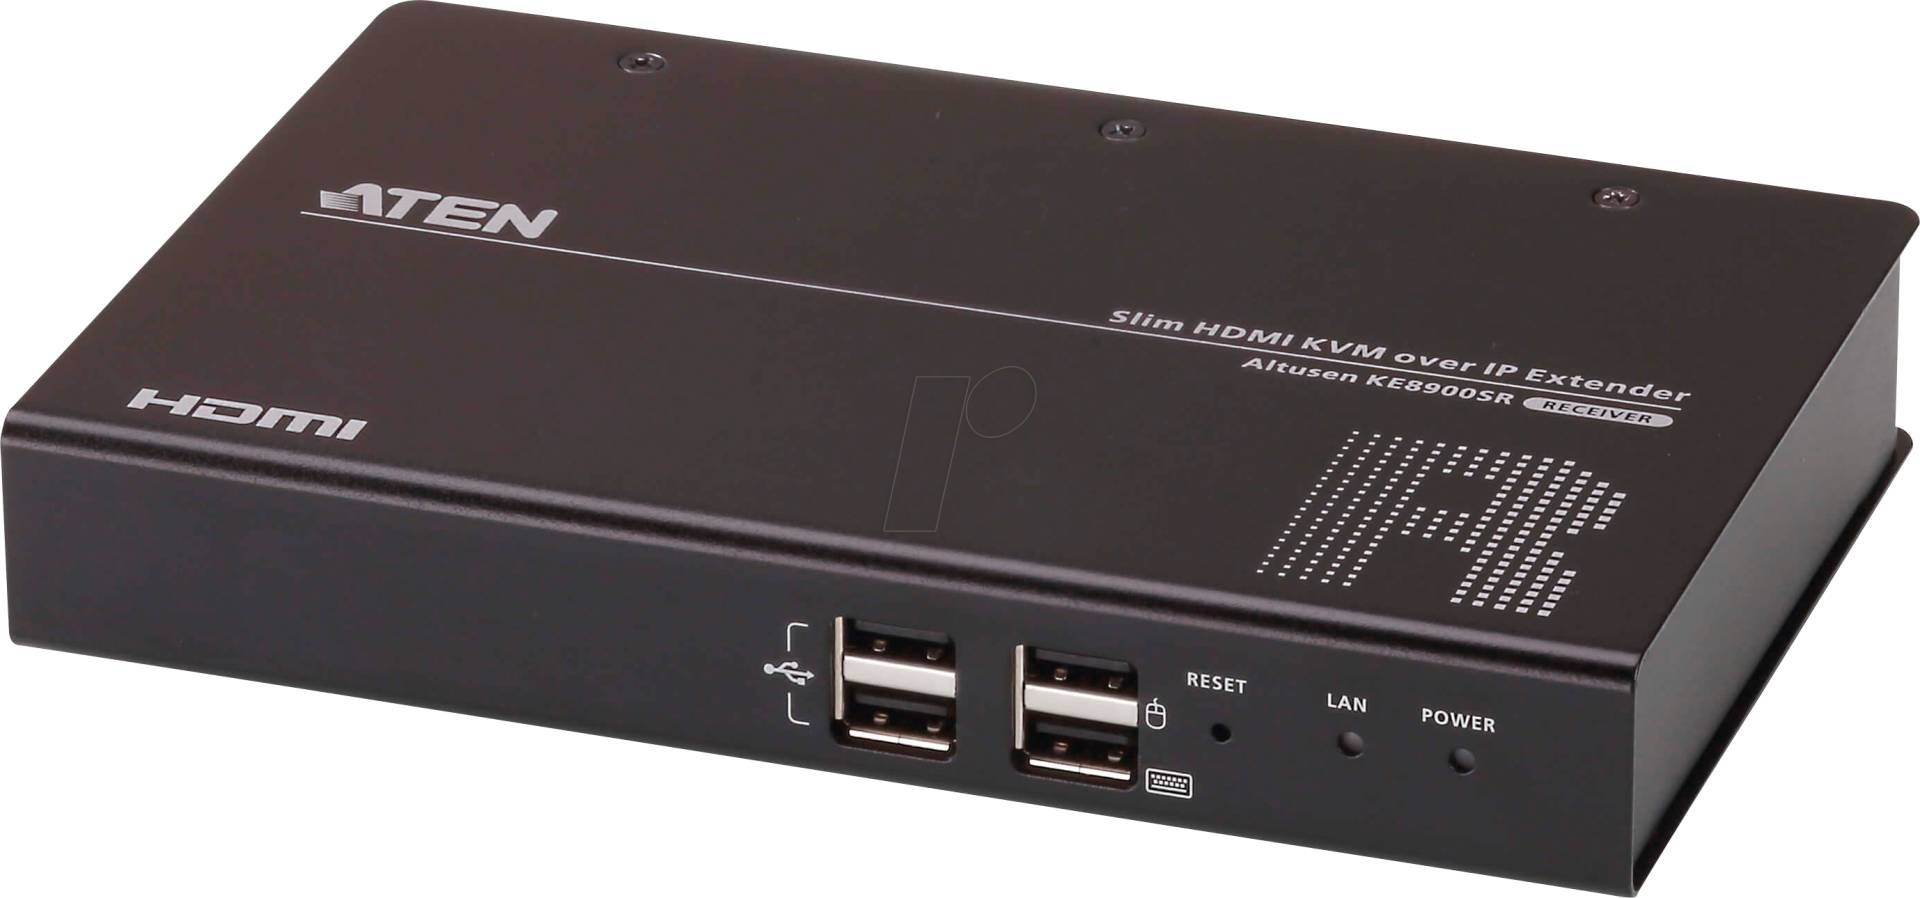 ATEN KE8900SR - KVM Over IP Empfänger, HDMI, USB von Aten